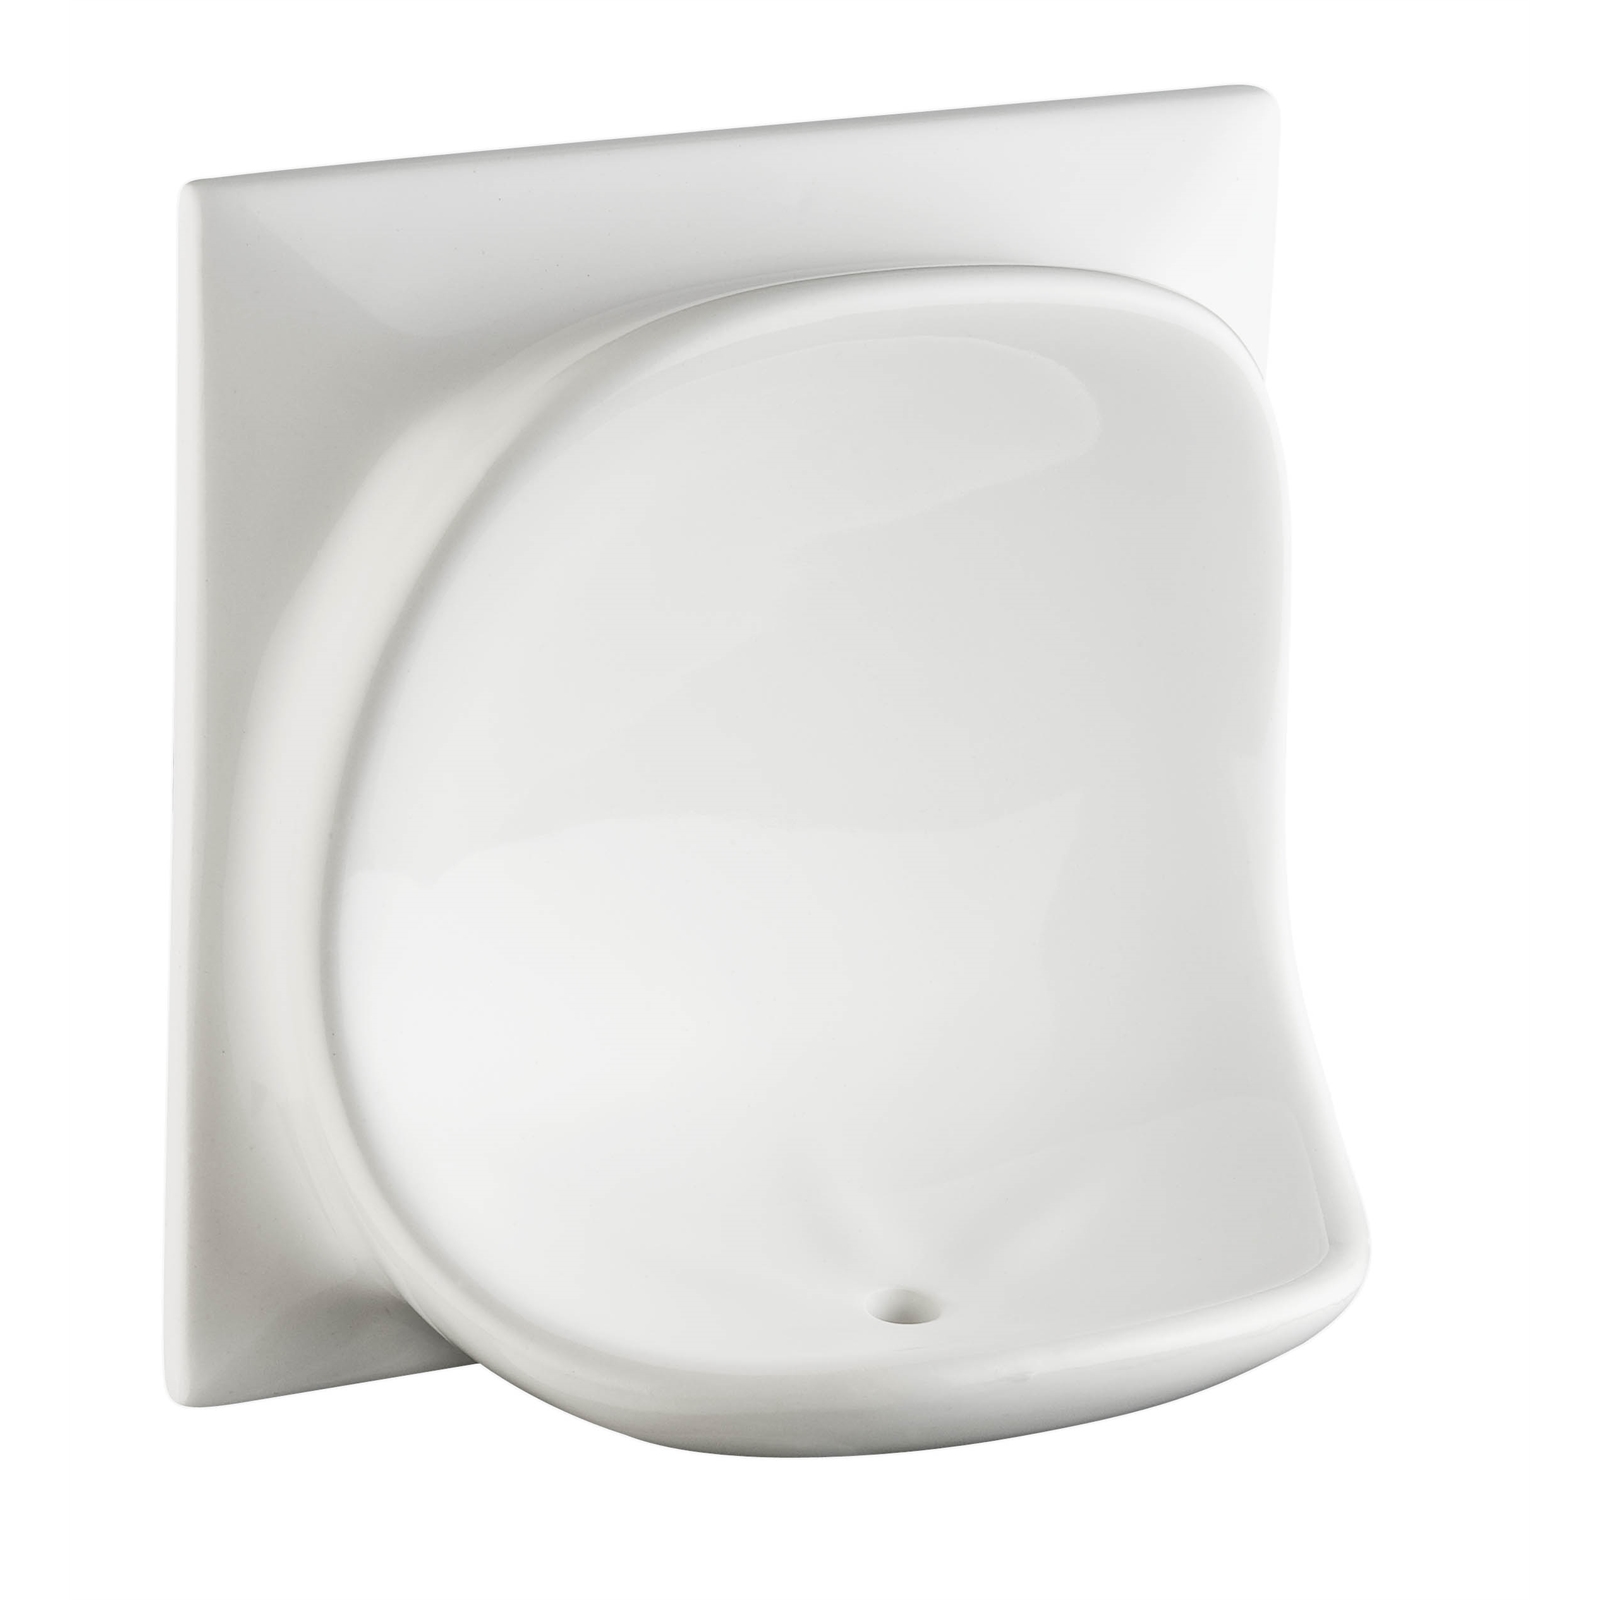 DTA Australia 150 x 150mm White Ceramic Soap Dish